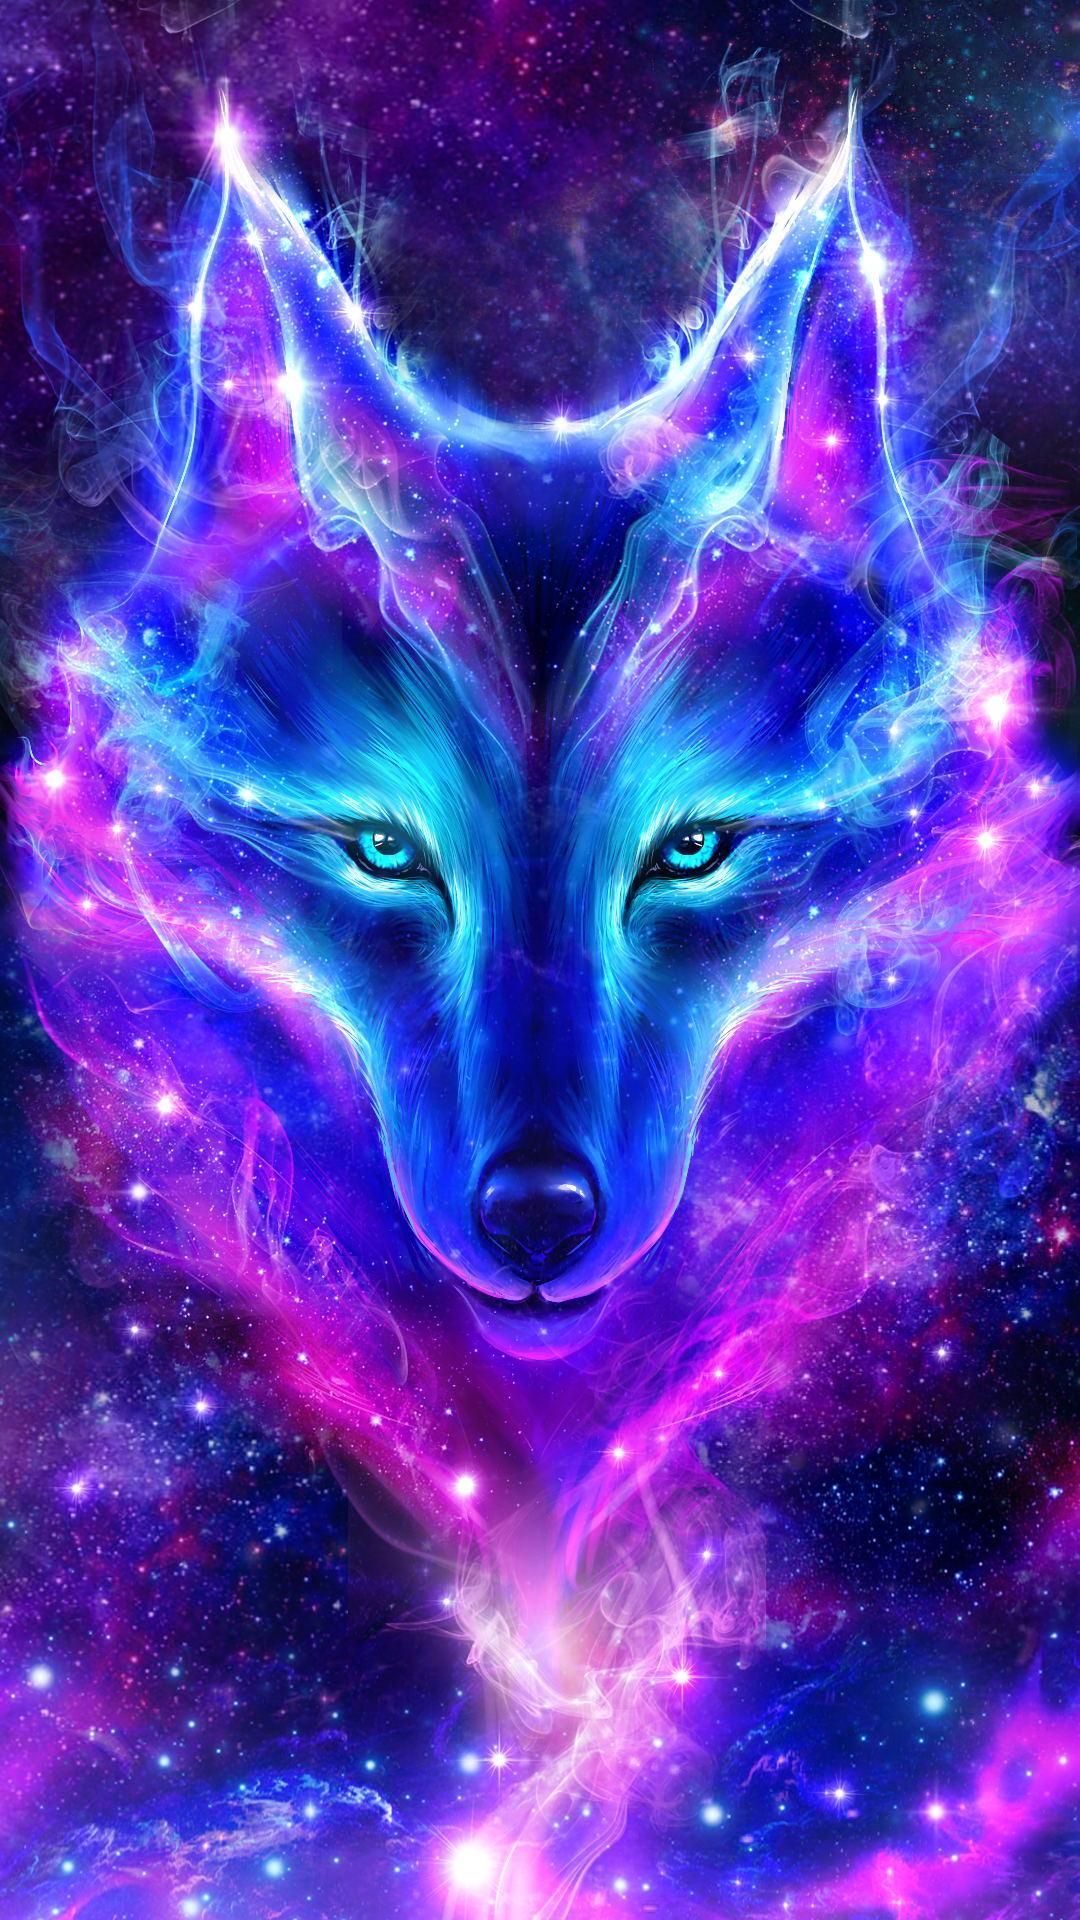 cielo live wallpaper,púrpura,zorro,lobo rojo,espacio,personaje de ficción